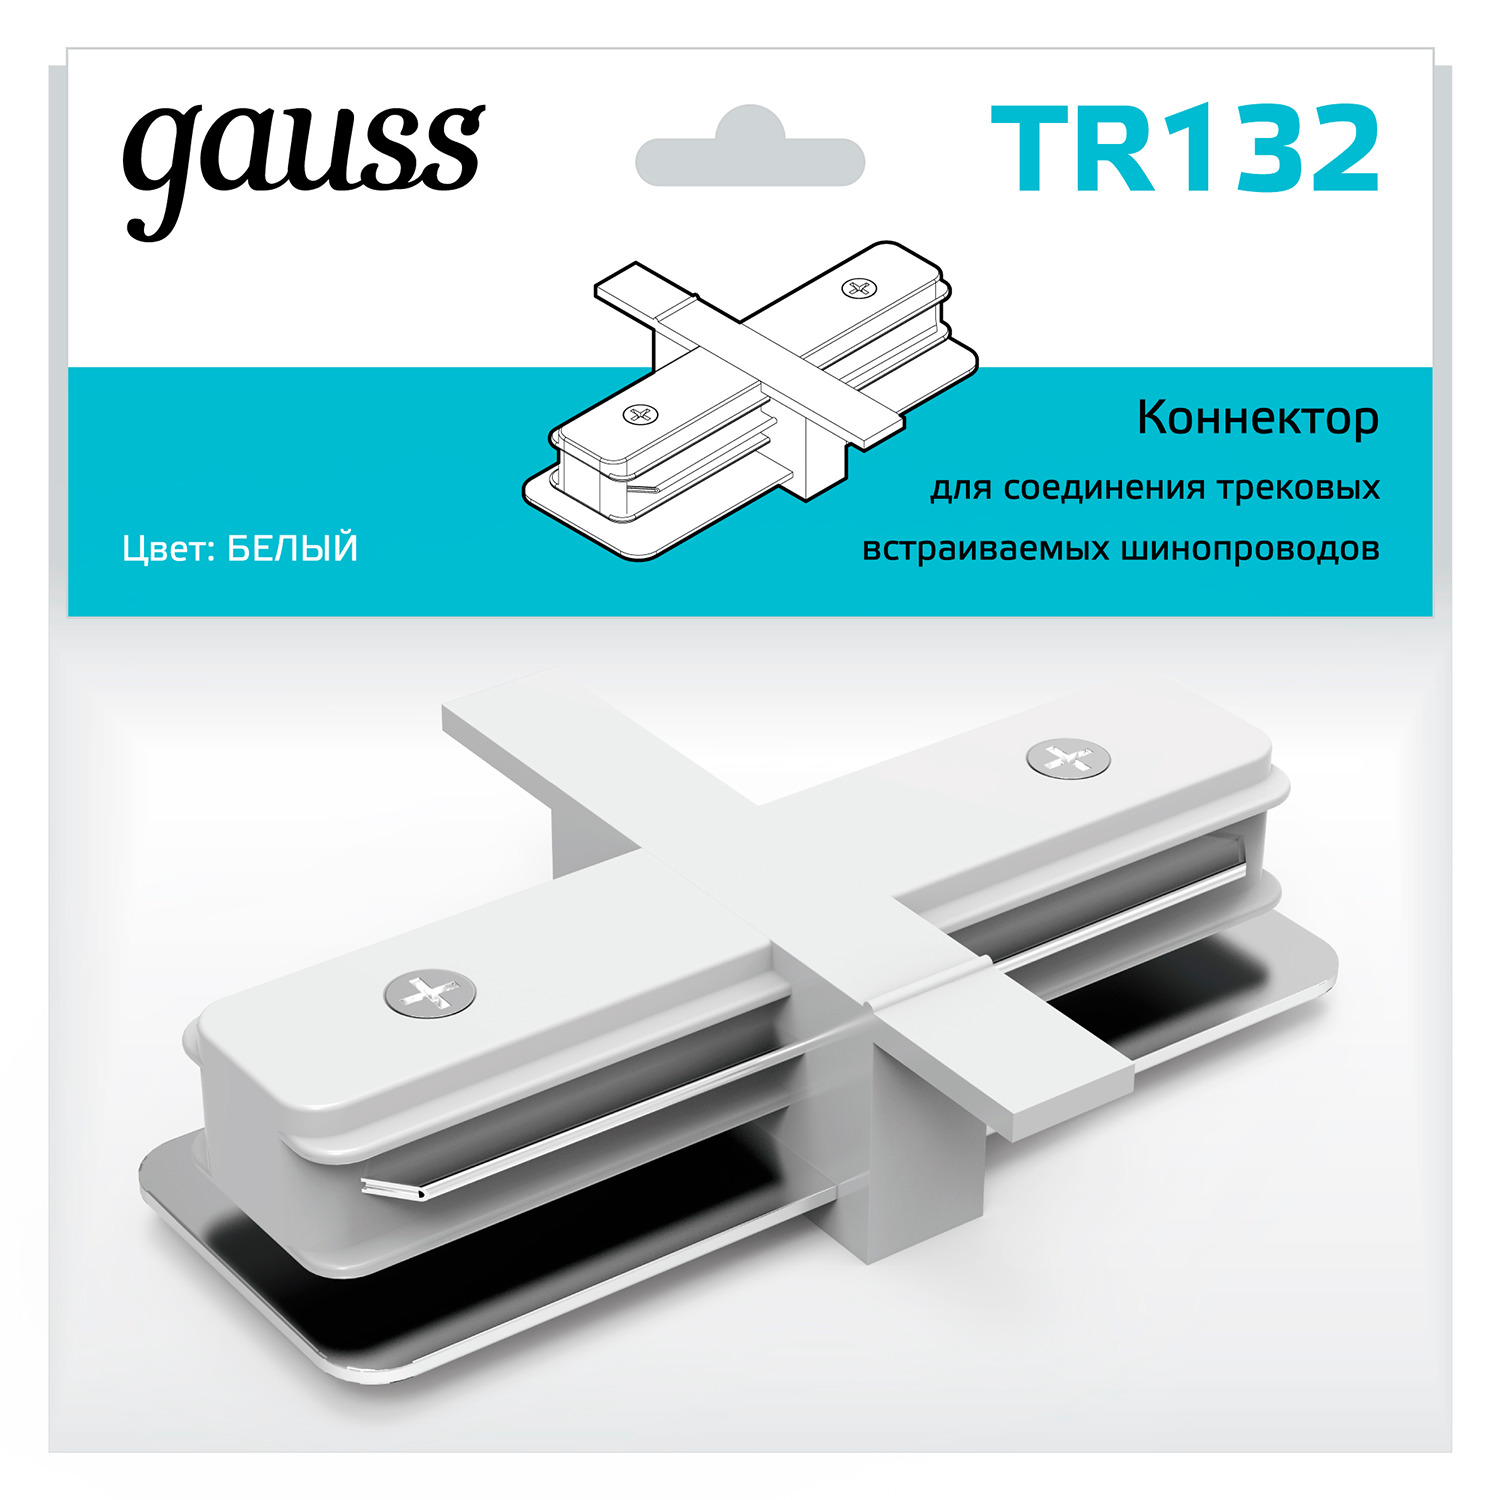 Коннектор Gauss для встраиваемых трековых шинопроводов прямой (I) белый коннектор gauss для встраиваемых трековых шинопроводов гибкий i белый